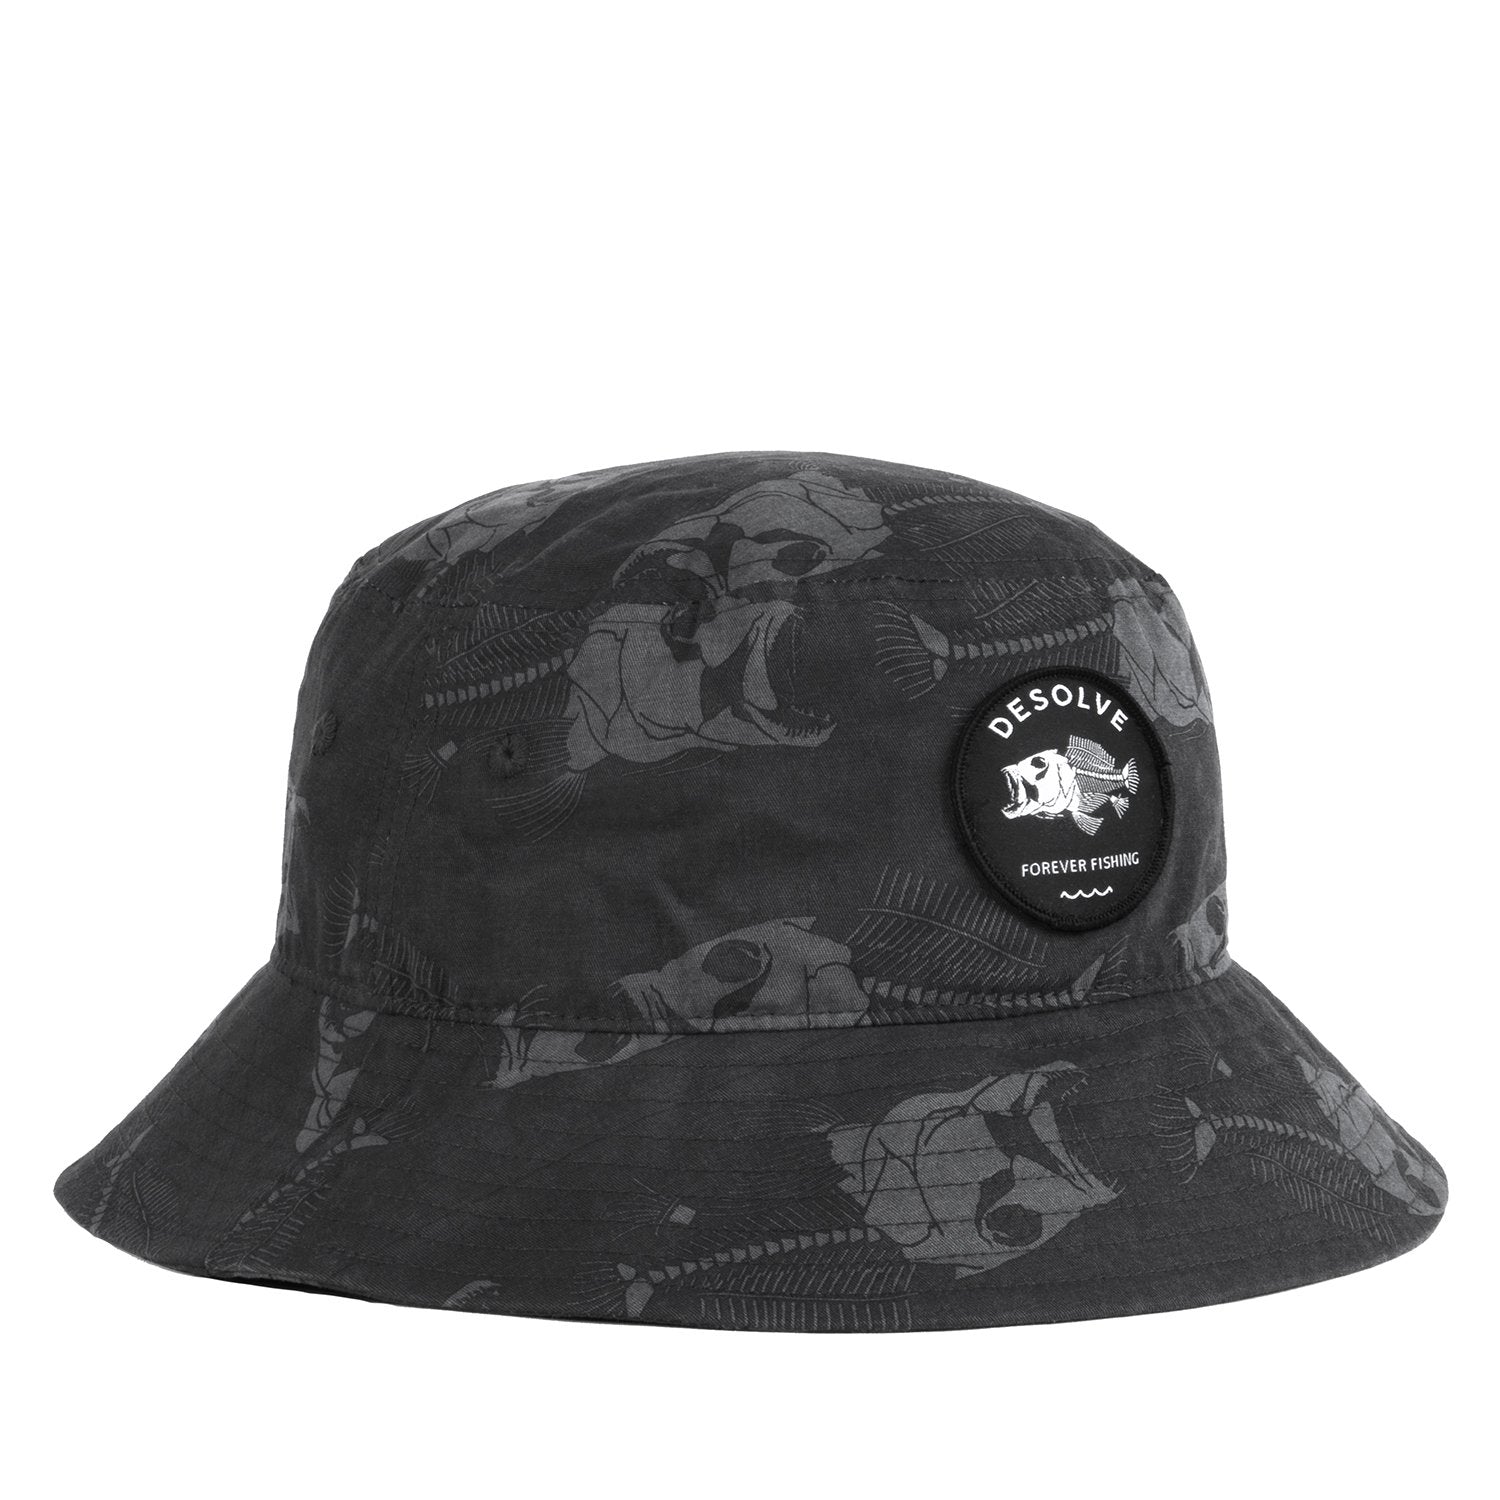 Kids Headwear, Desolve, Fishing Hats NZ - Desolve Supply Co.